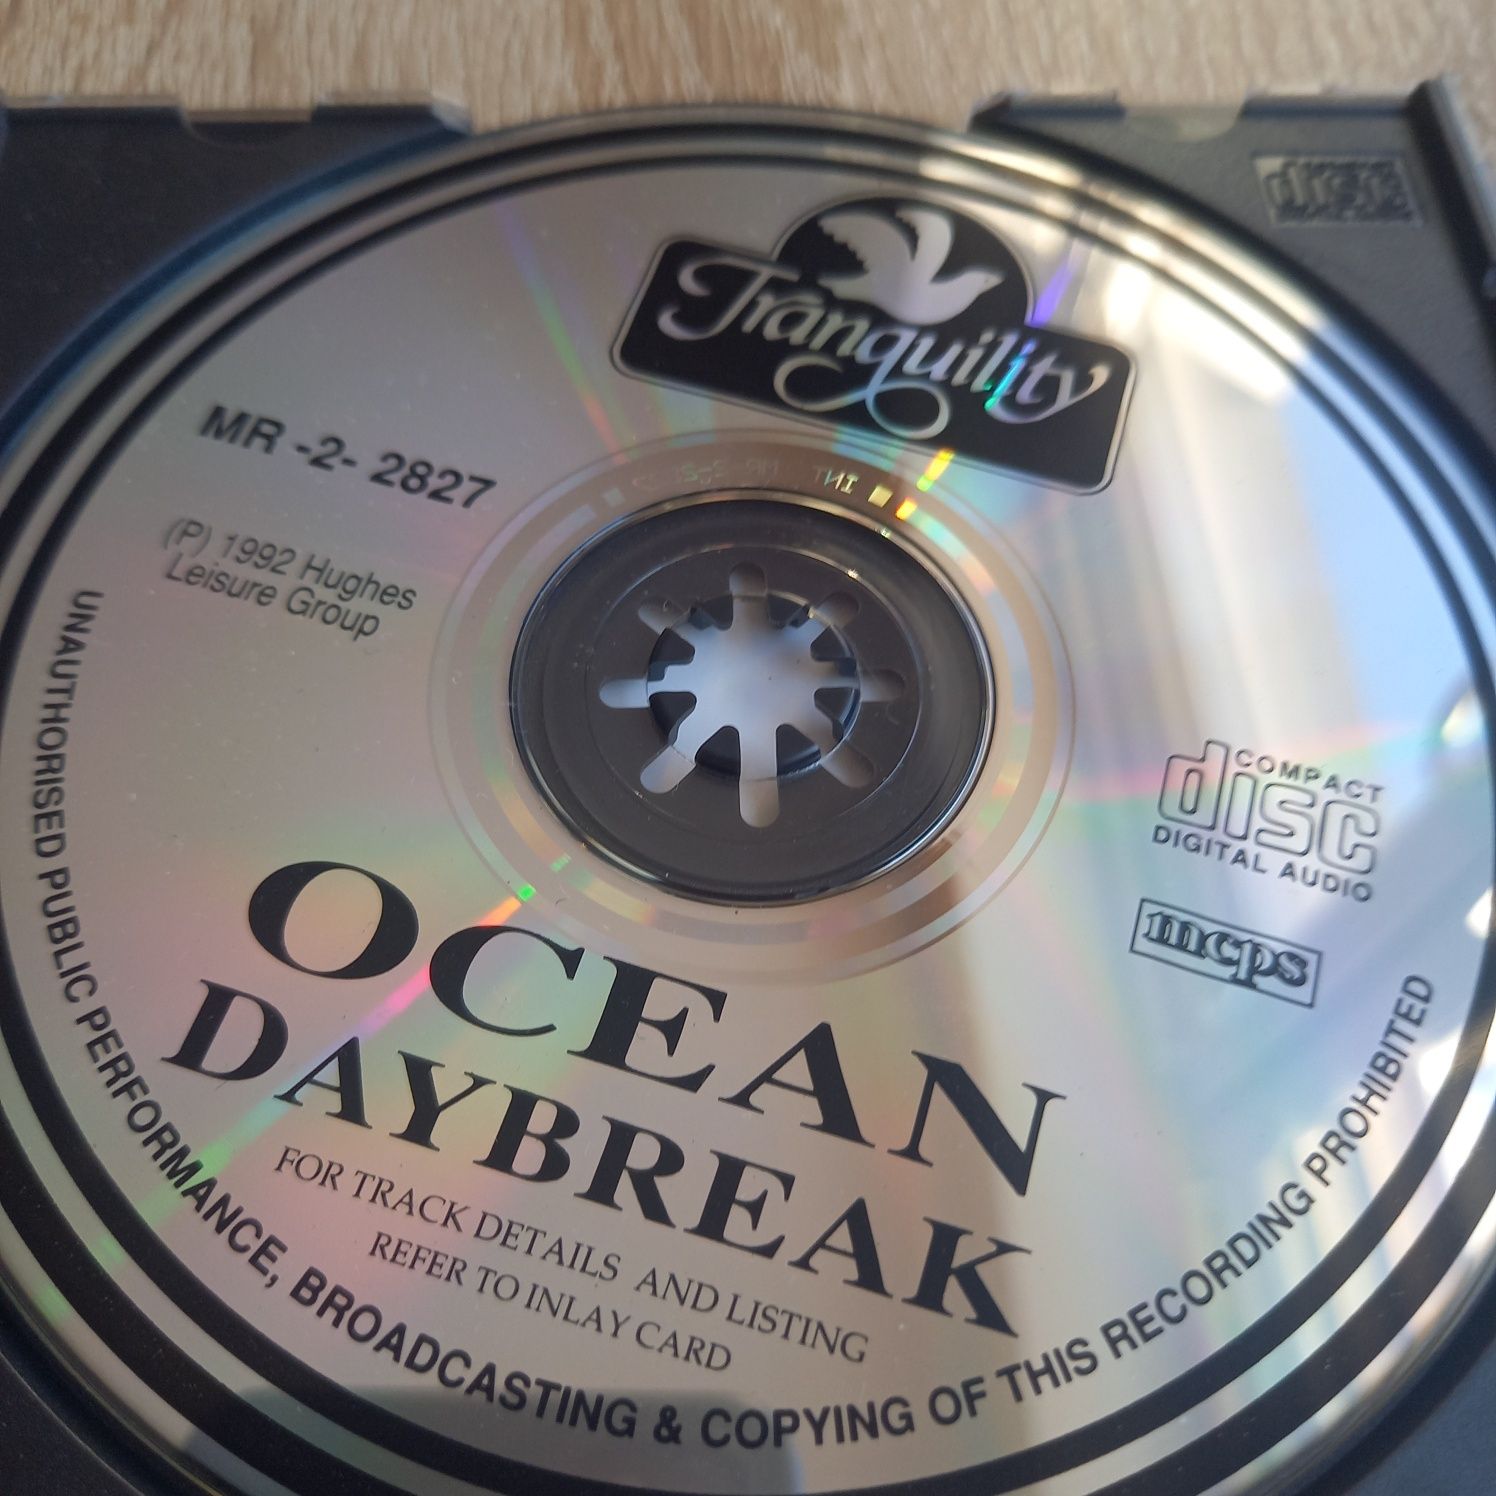 Płyta CD Ocean Daybreak